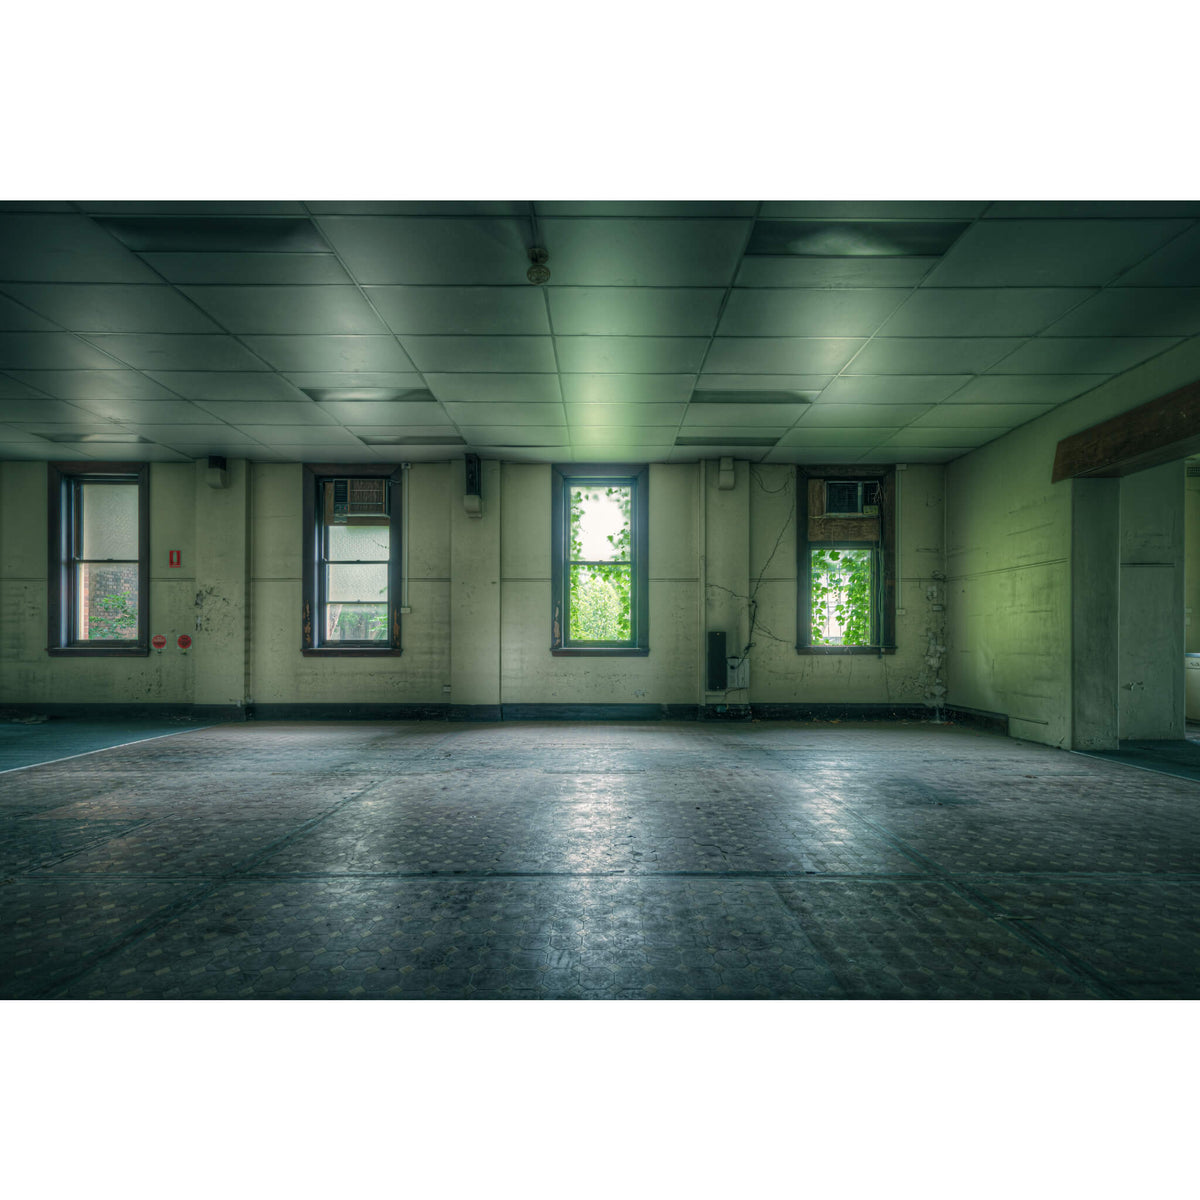 Hollow Room | Lewisham Hospital